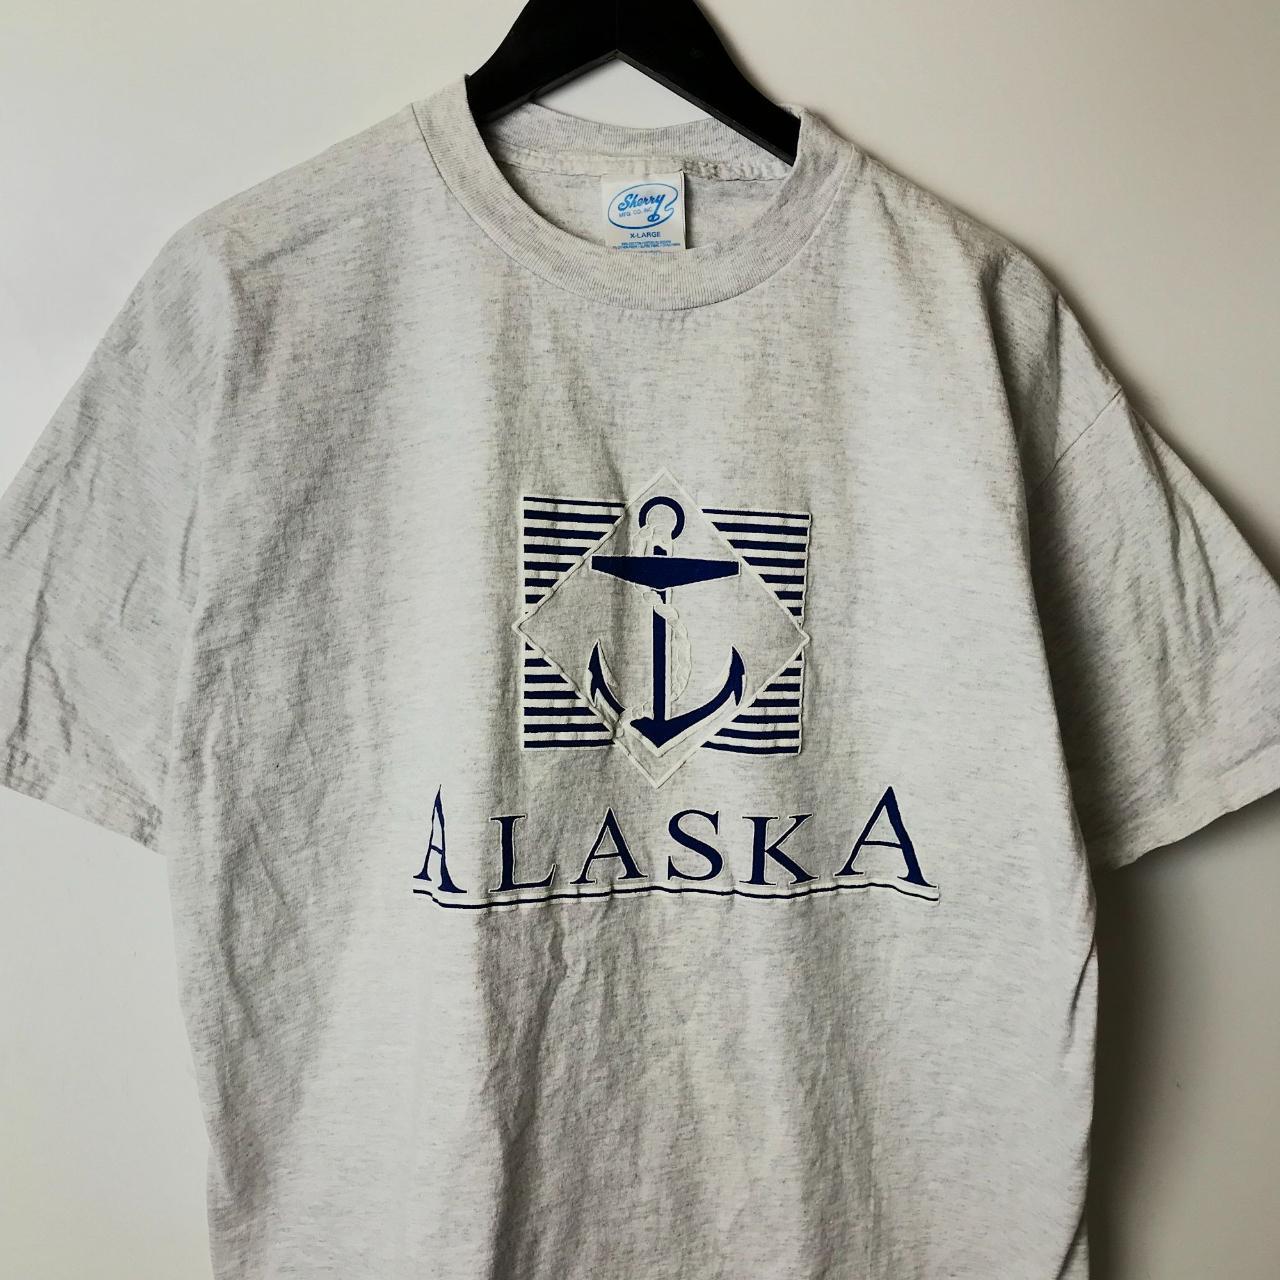 Alaska T Shirt Puff Print Anchor Graphic Tee Short... - Depop